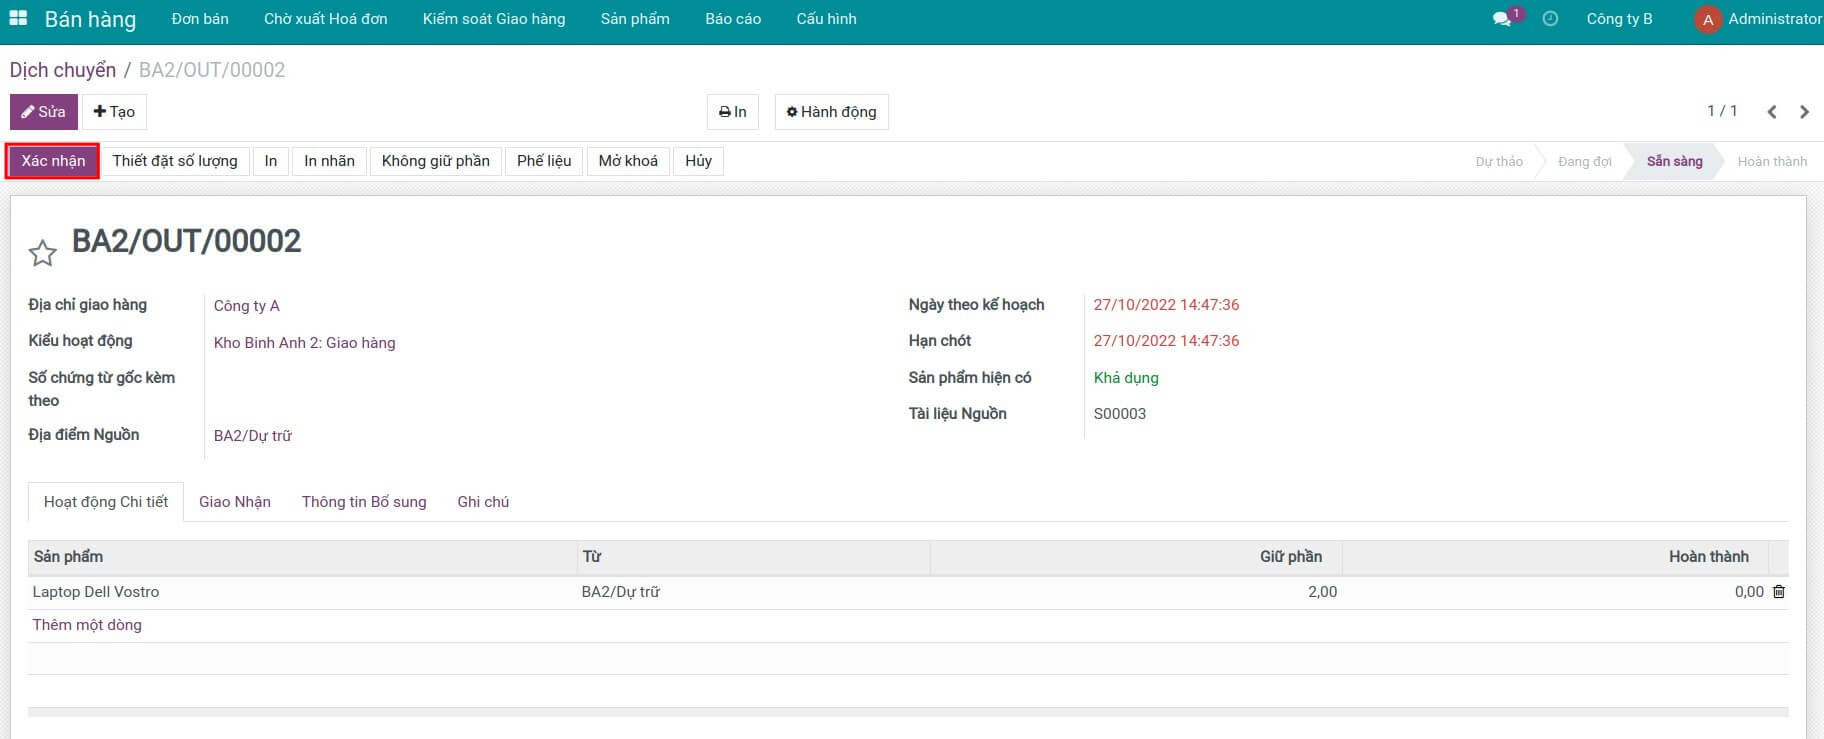 Xác nhận phiếu giao hàng trên Phần mềm quản lý Kho & Chuỗi cung ứng Viindoo